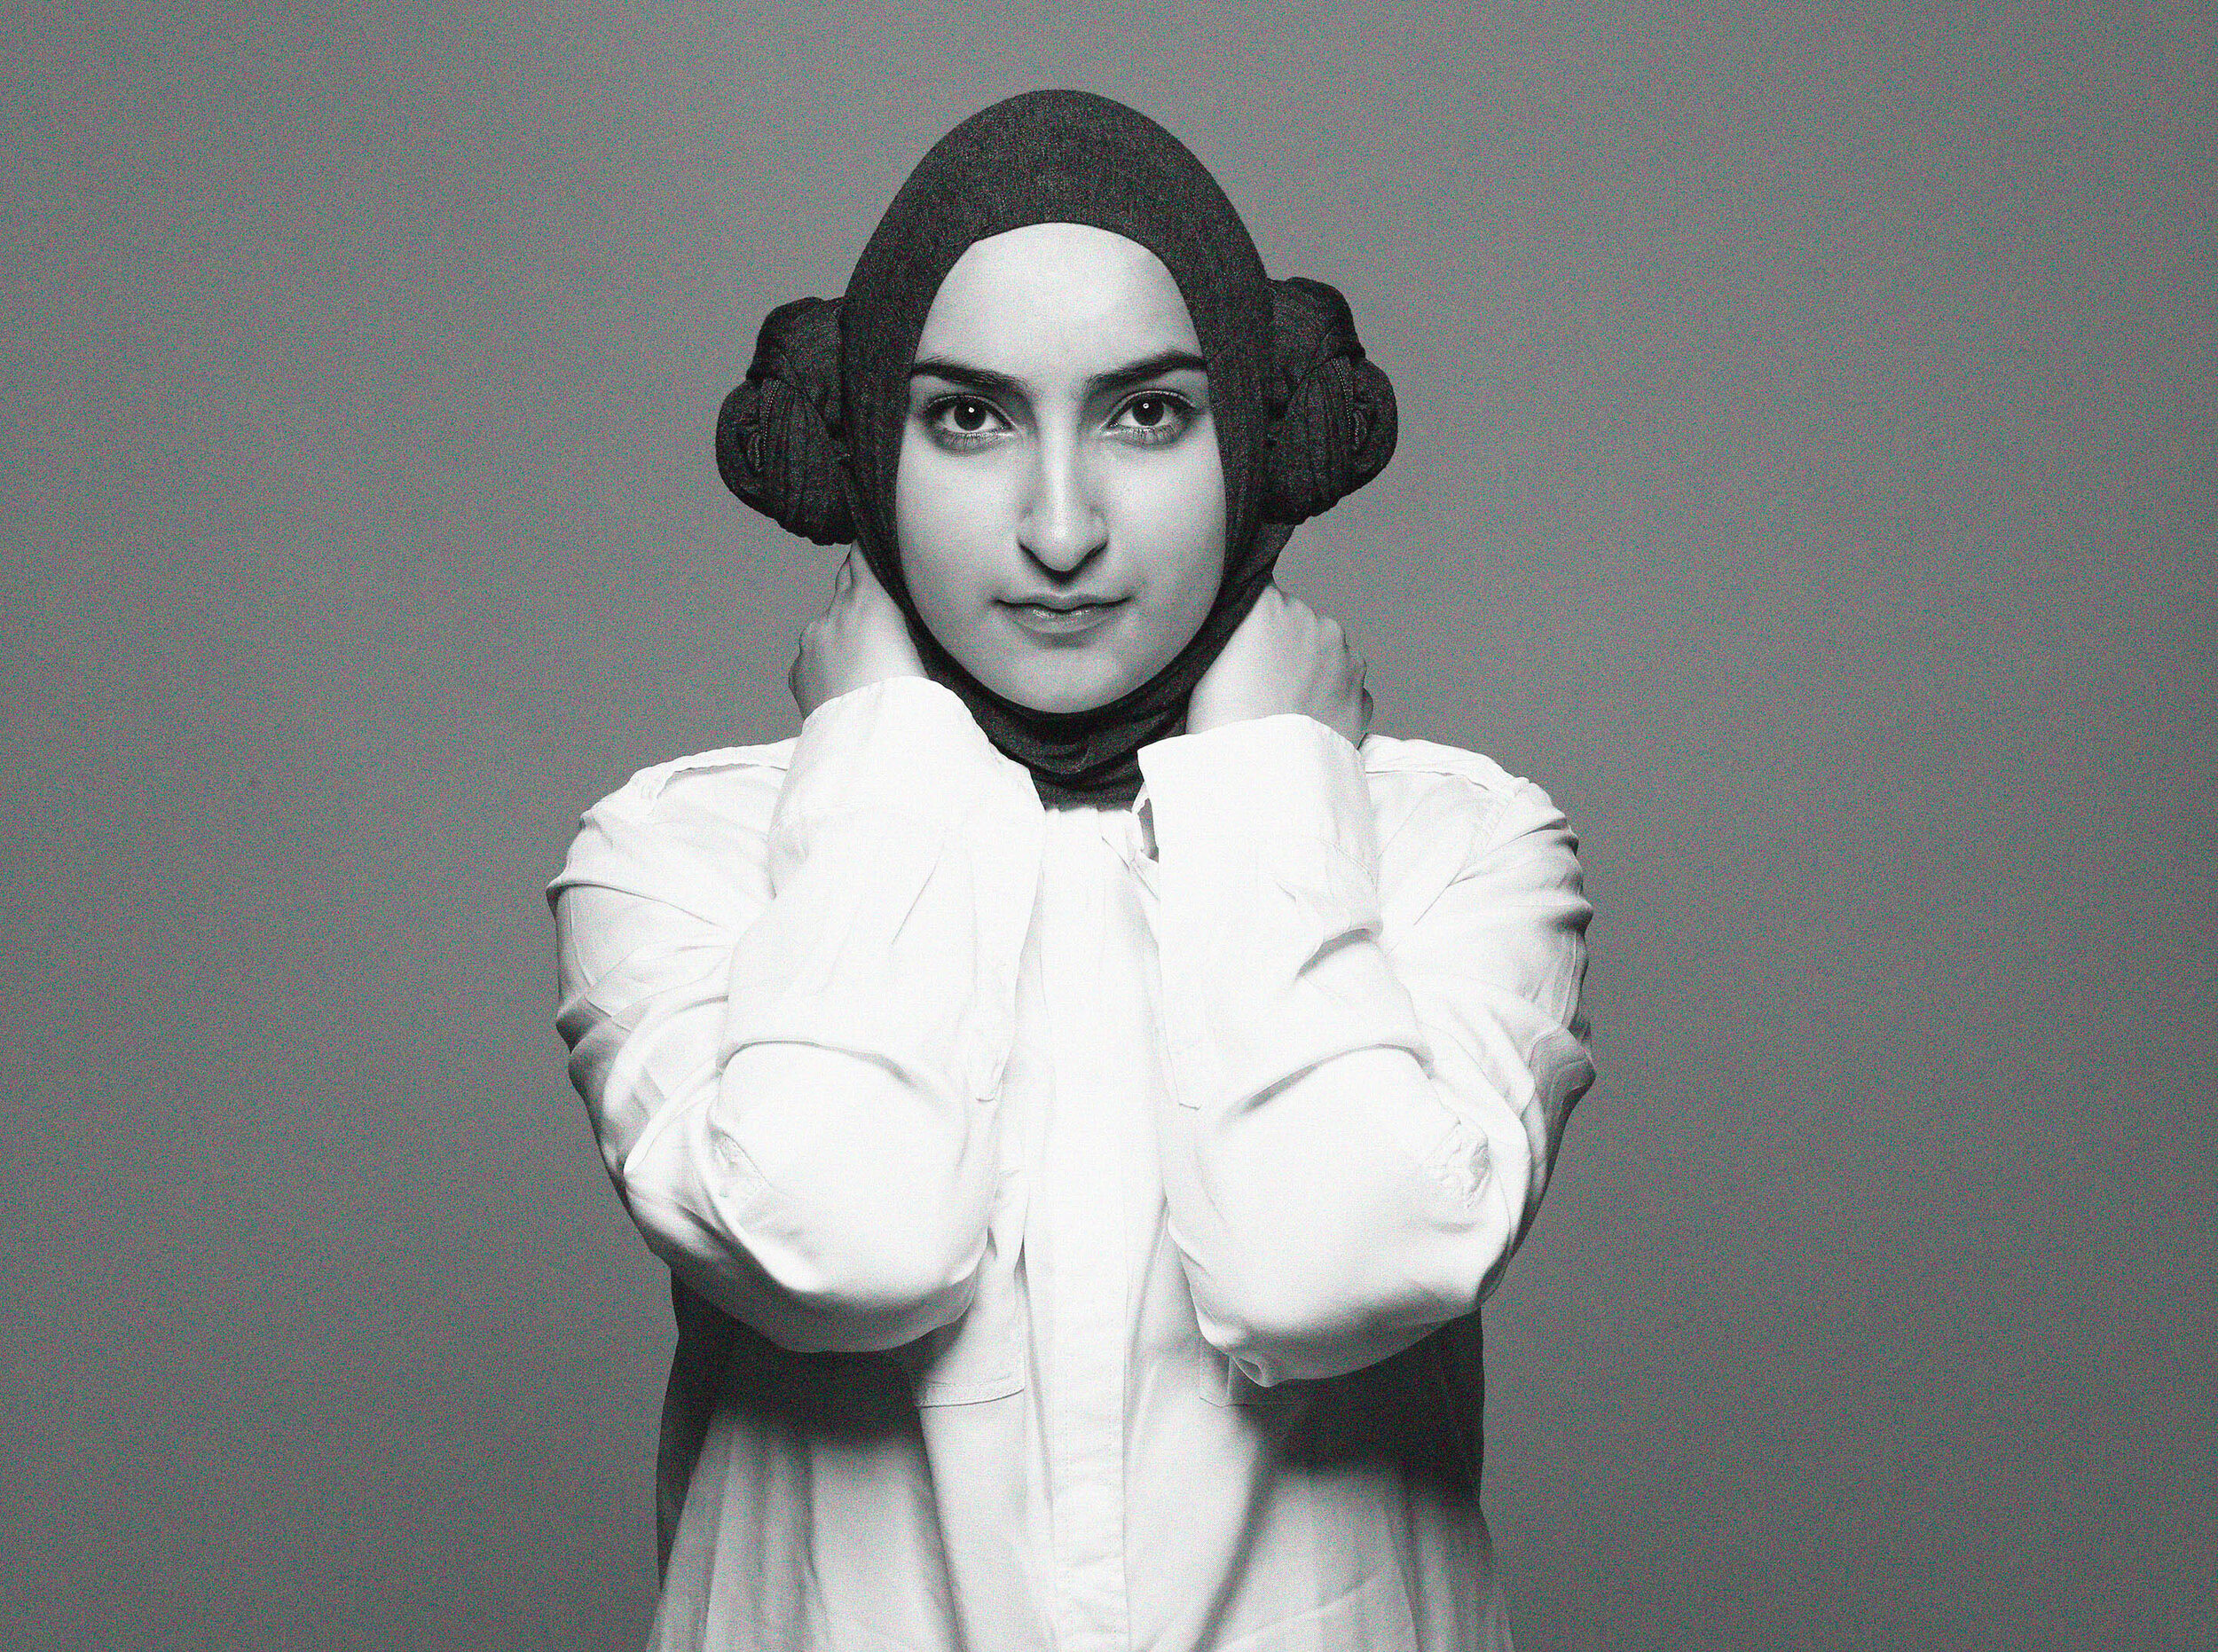 A woman dressed as Princess Leia wearing a hijab.